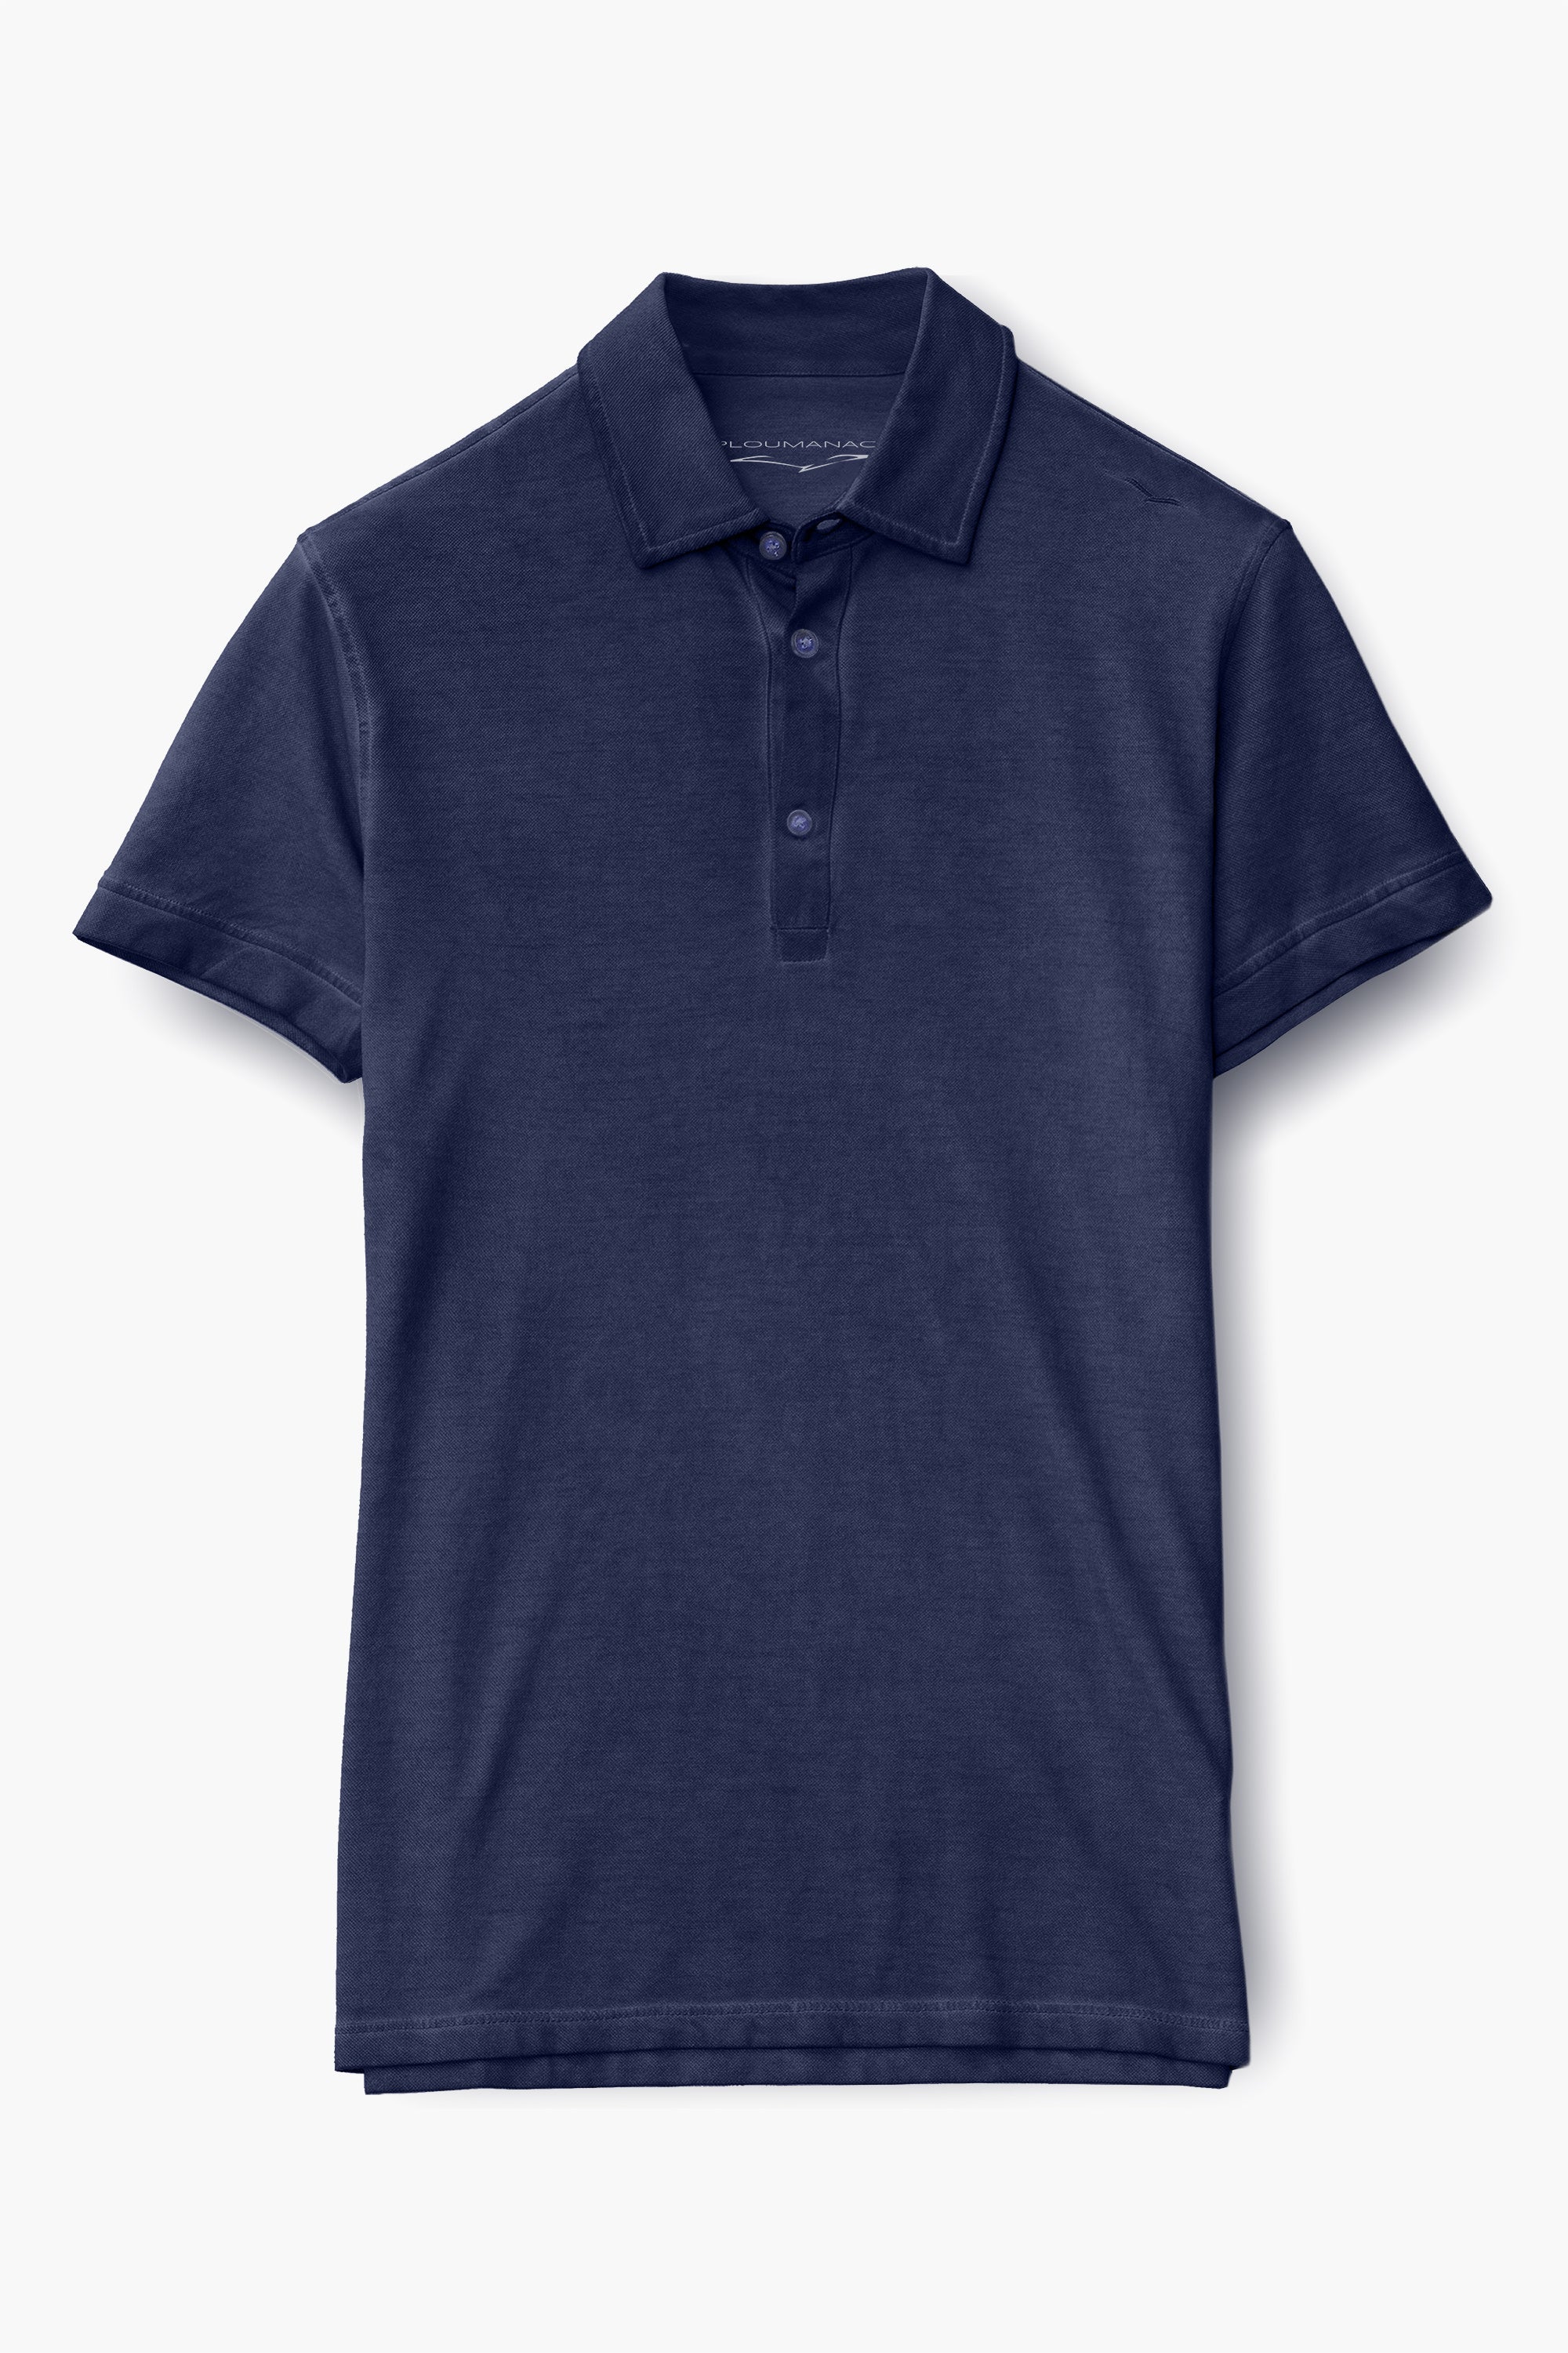 Hampton Polo Shirt - Navy - Polos